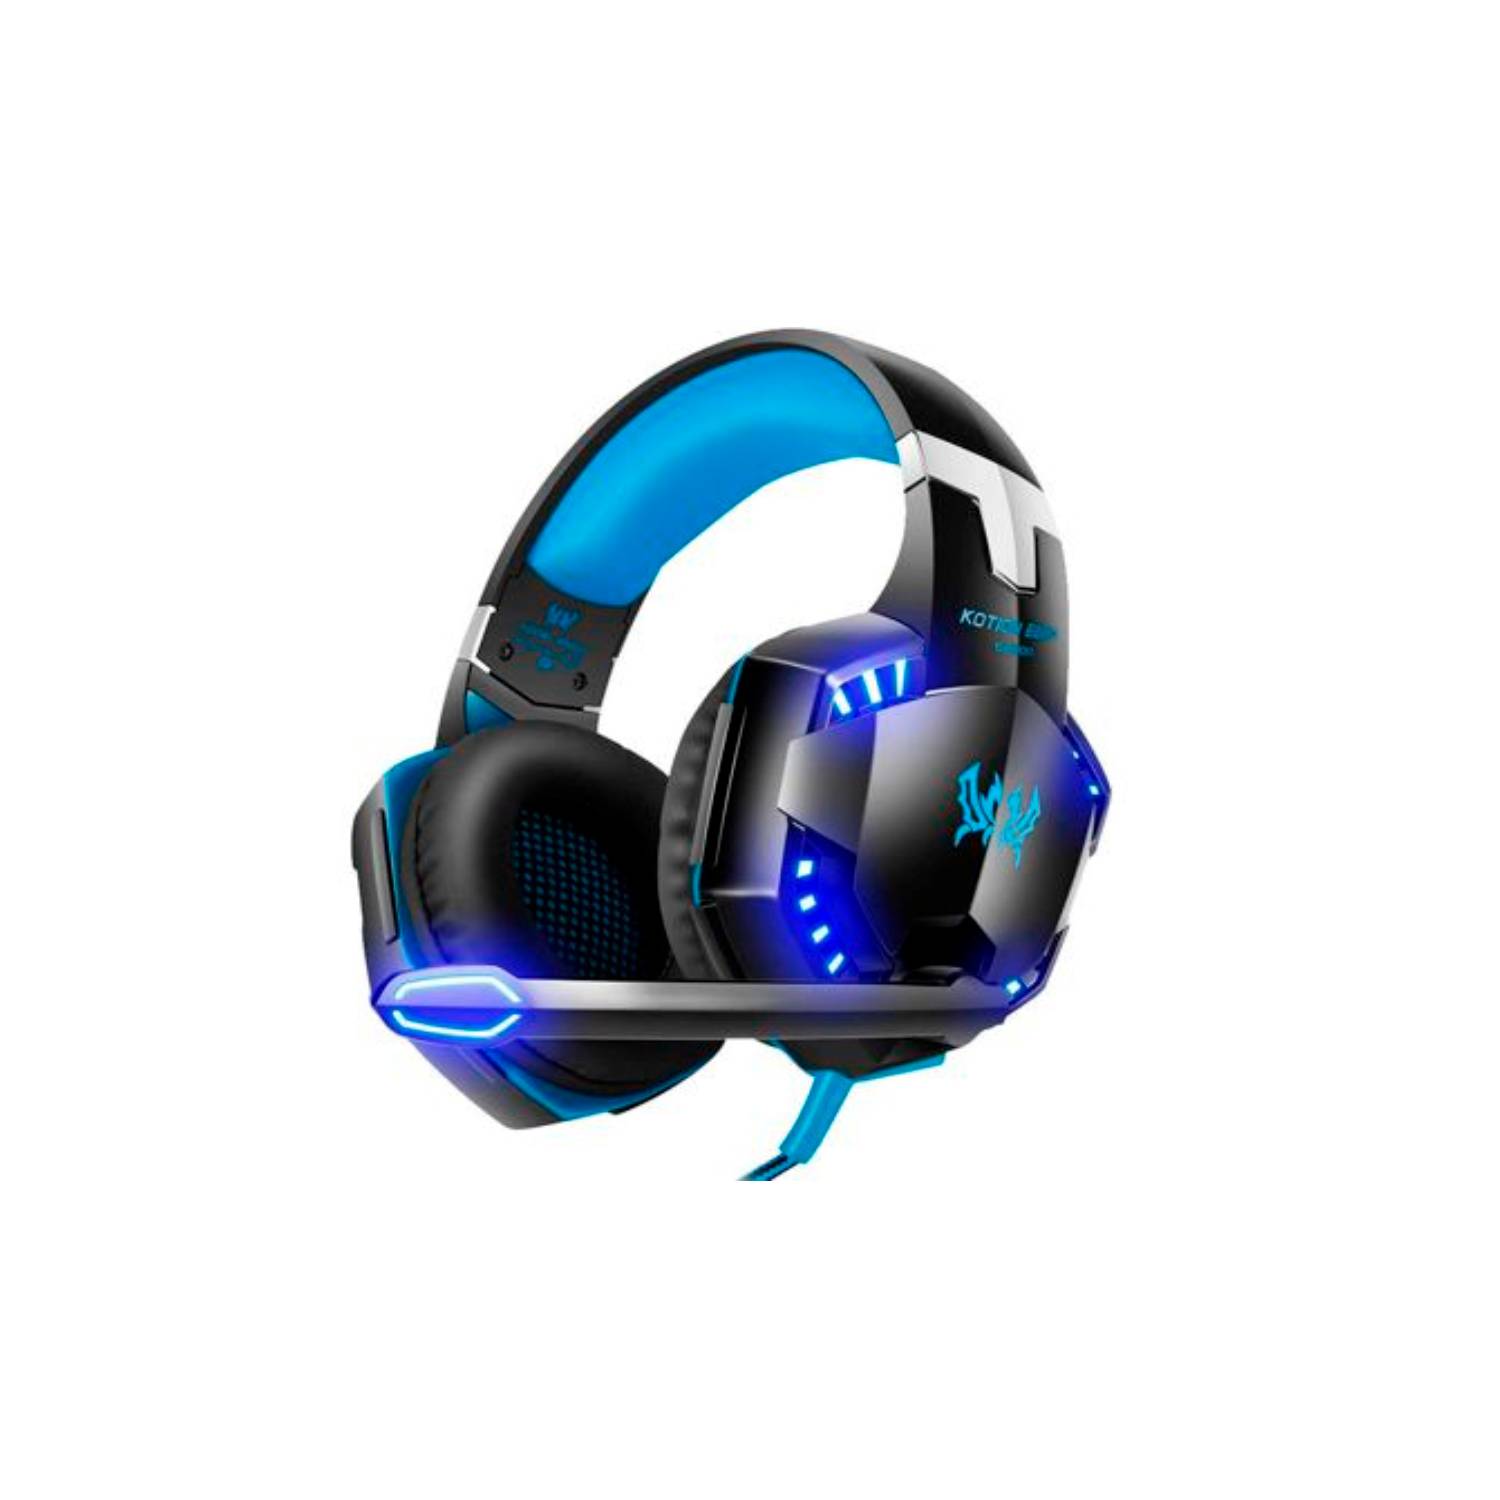 Klack Auriculares Gaming LED para PS4/PC/Xbox Azul